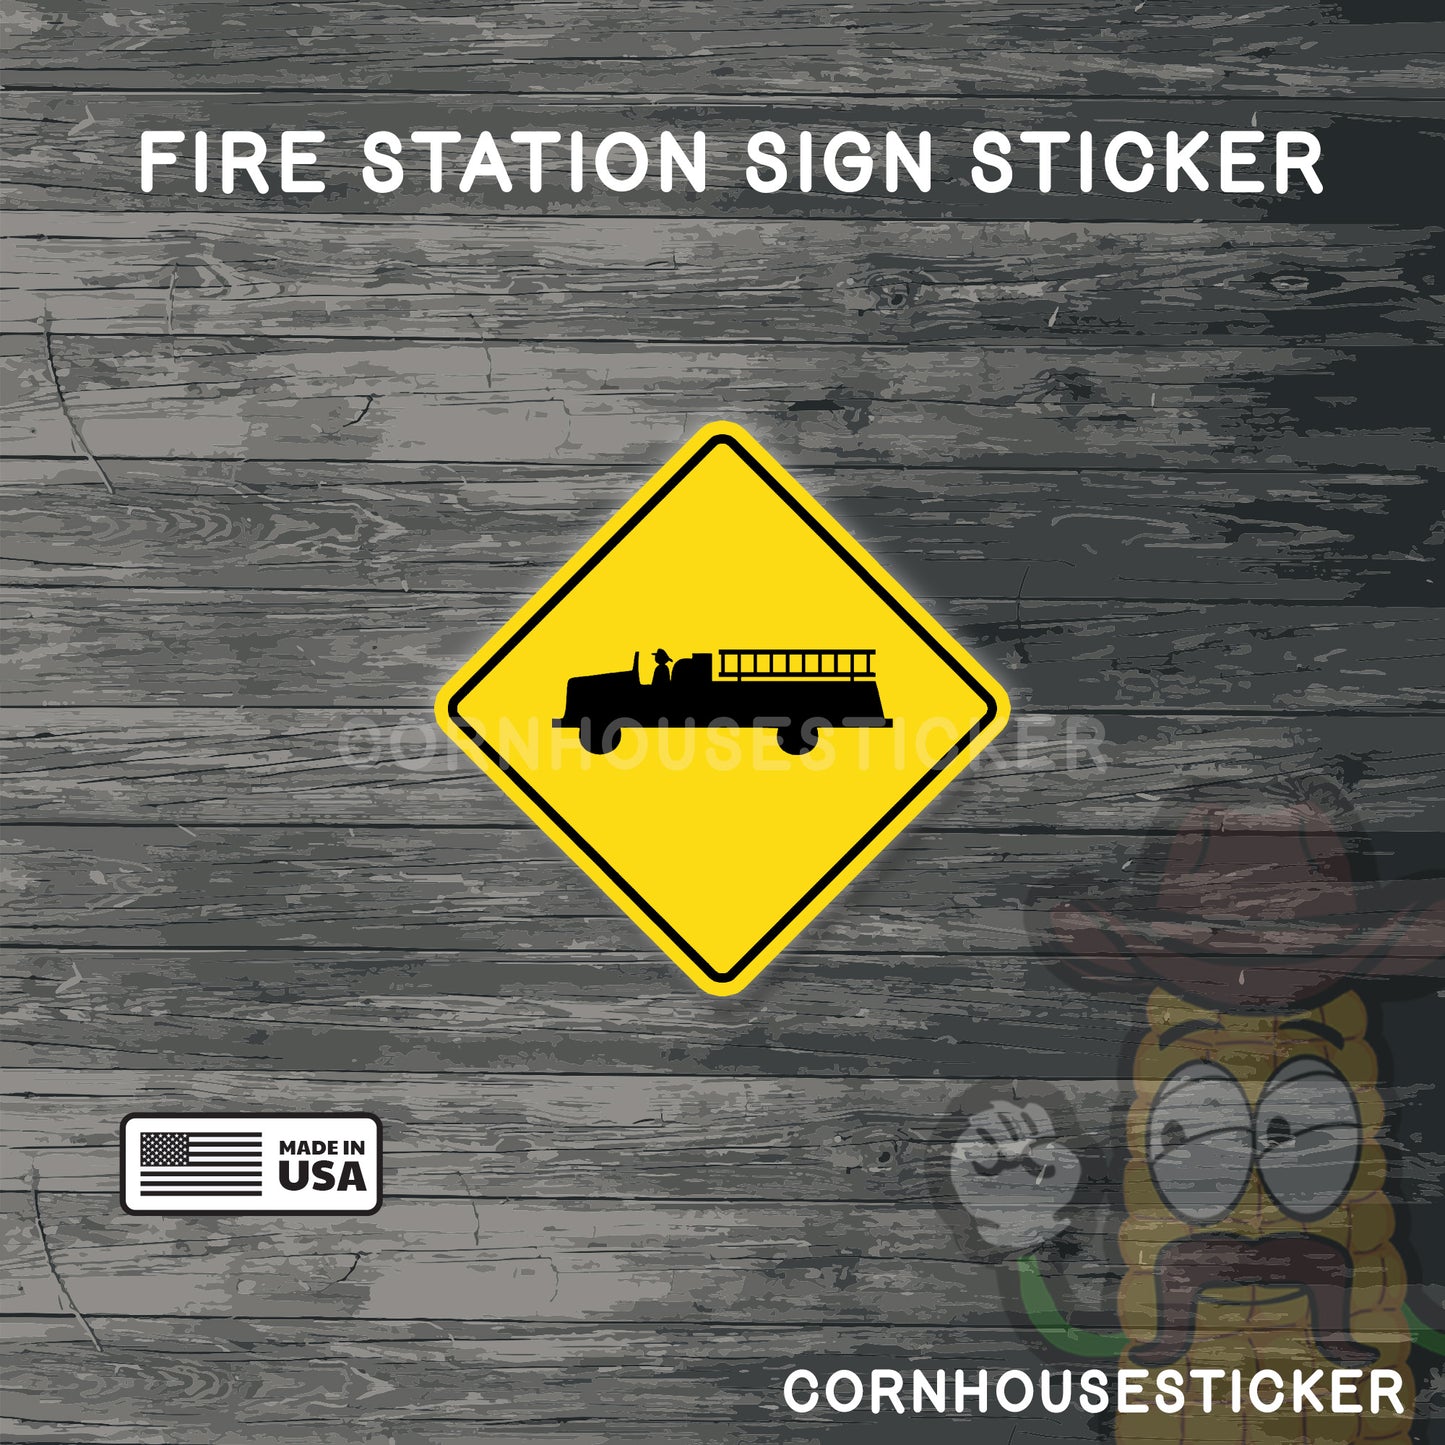 Fire station regulatory sign| Firefighter sticker